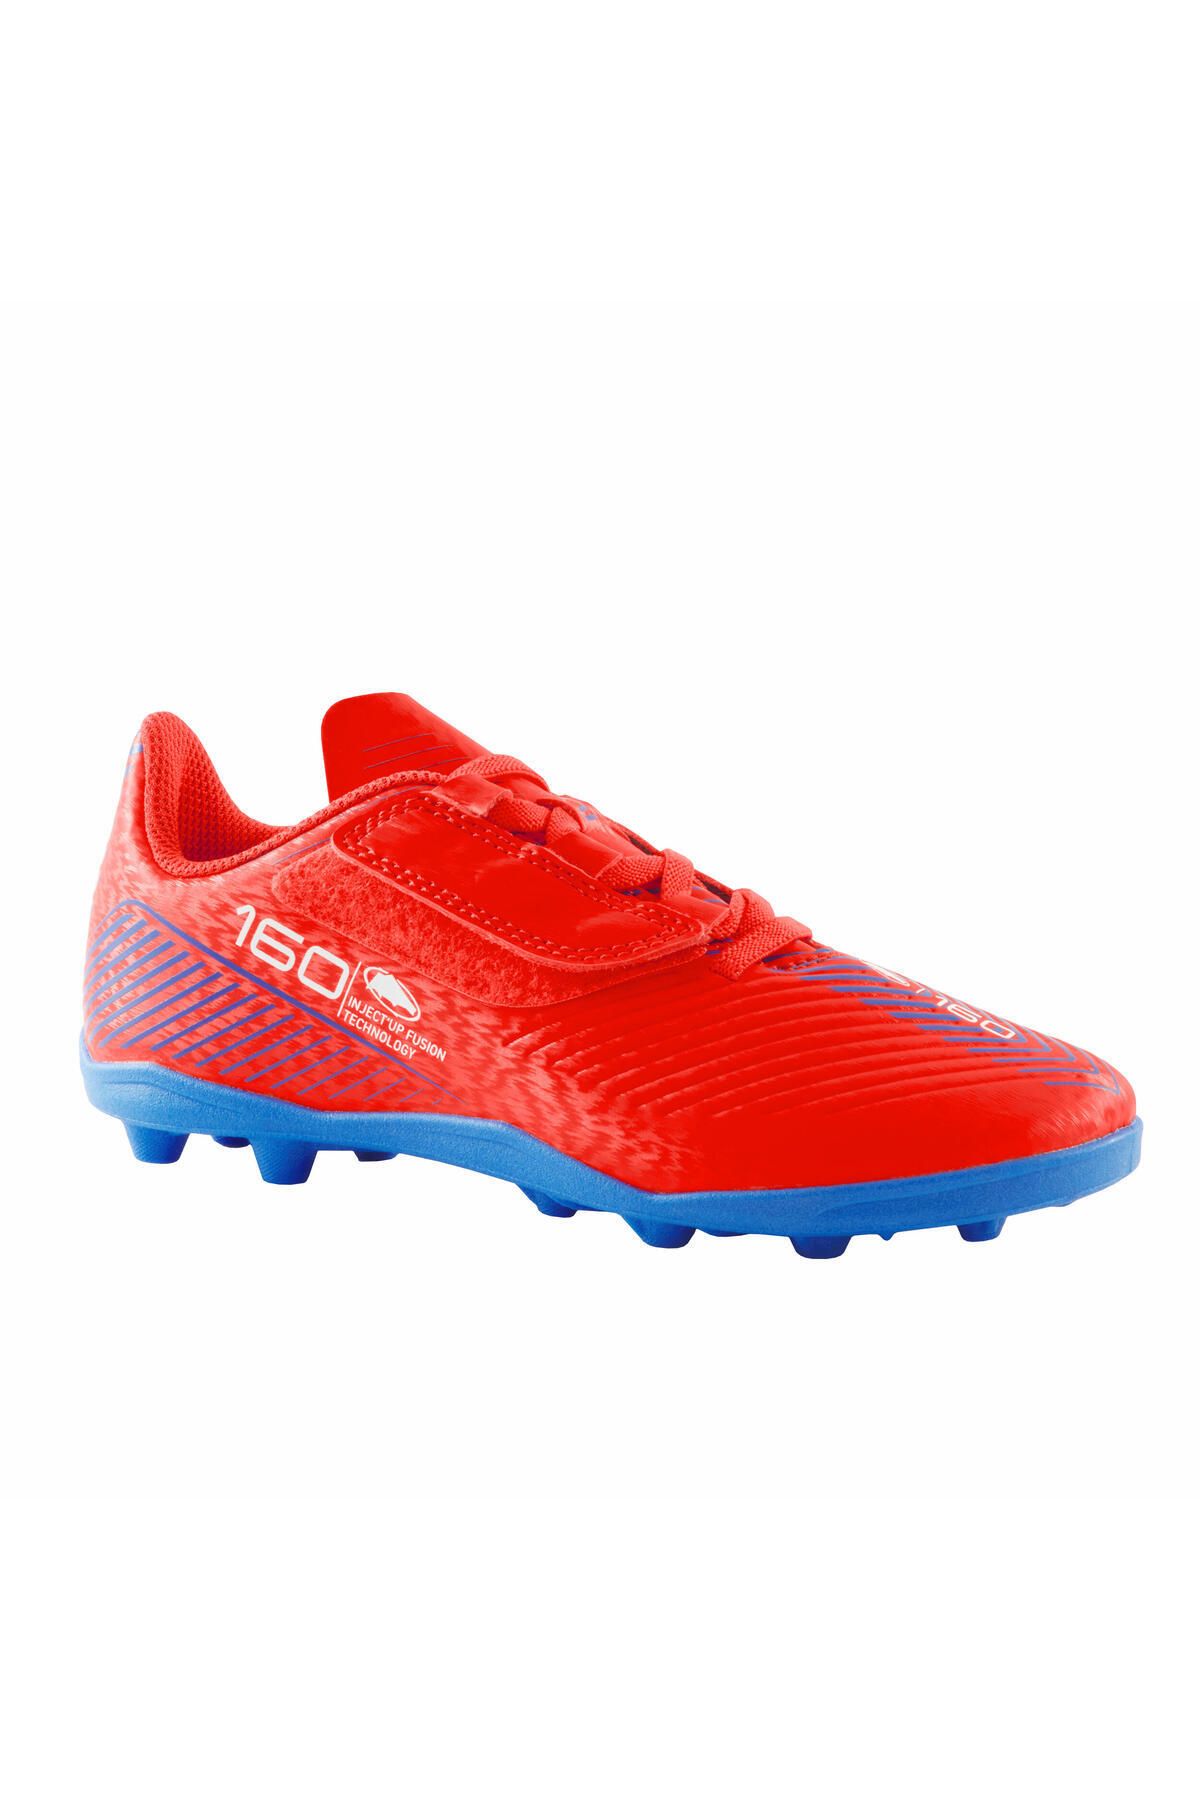 Decathlon Çocuk Krampon / Futbol Ayakkabısı - Kırmızı - 160 Easy AG/FG